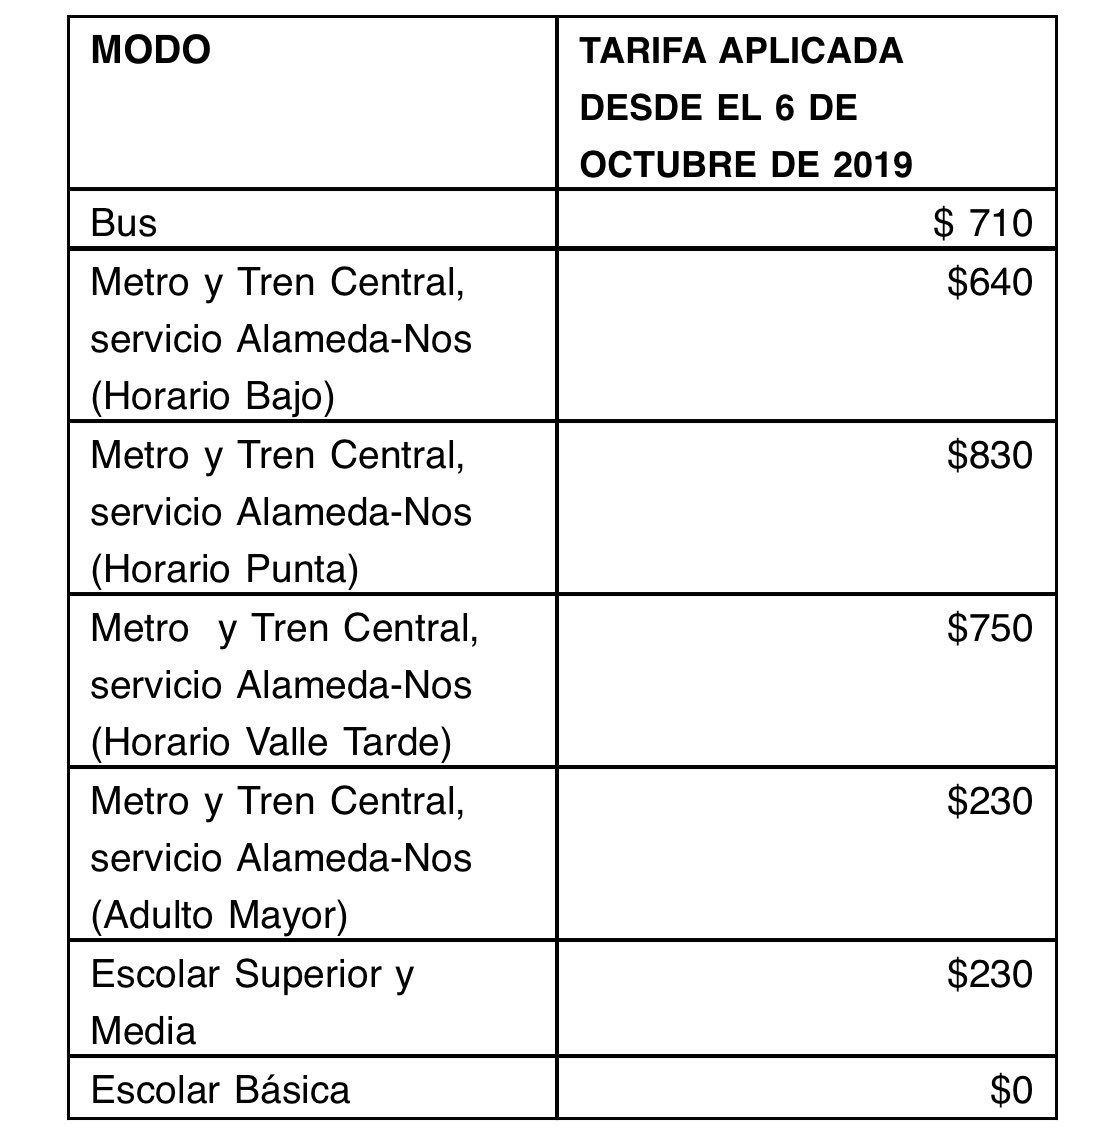 Los precios del transporte tras alza de pasajes: Metro sube $30 en horario  punta y valle